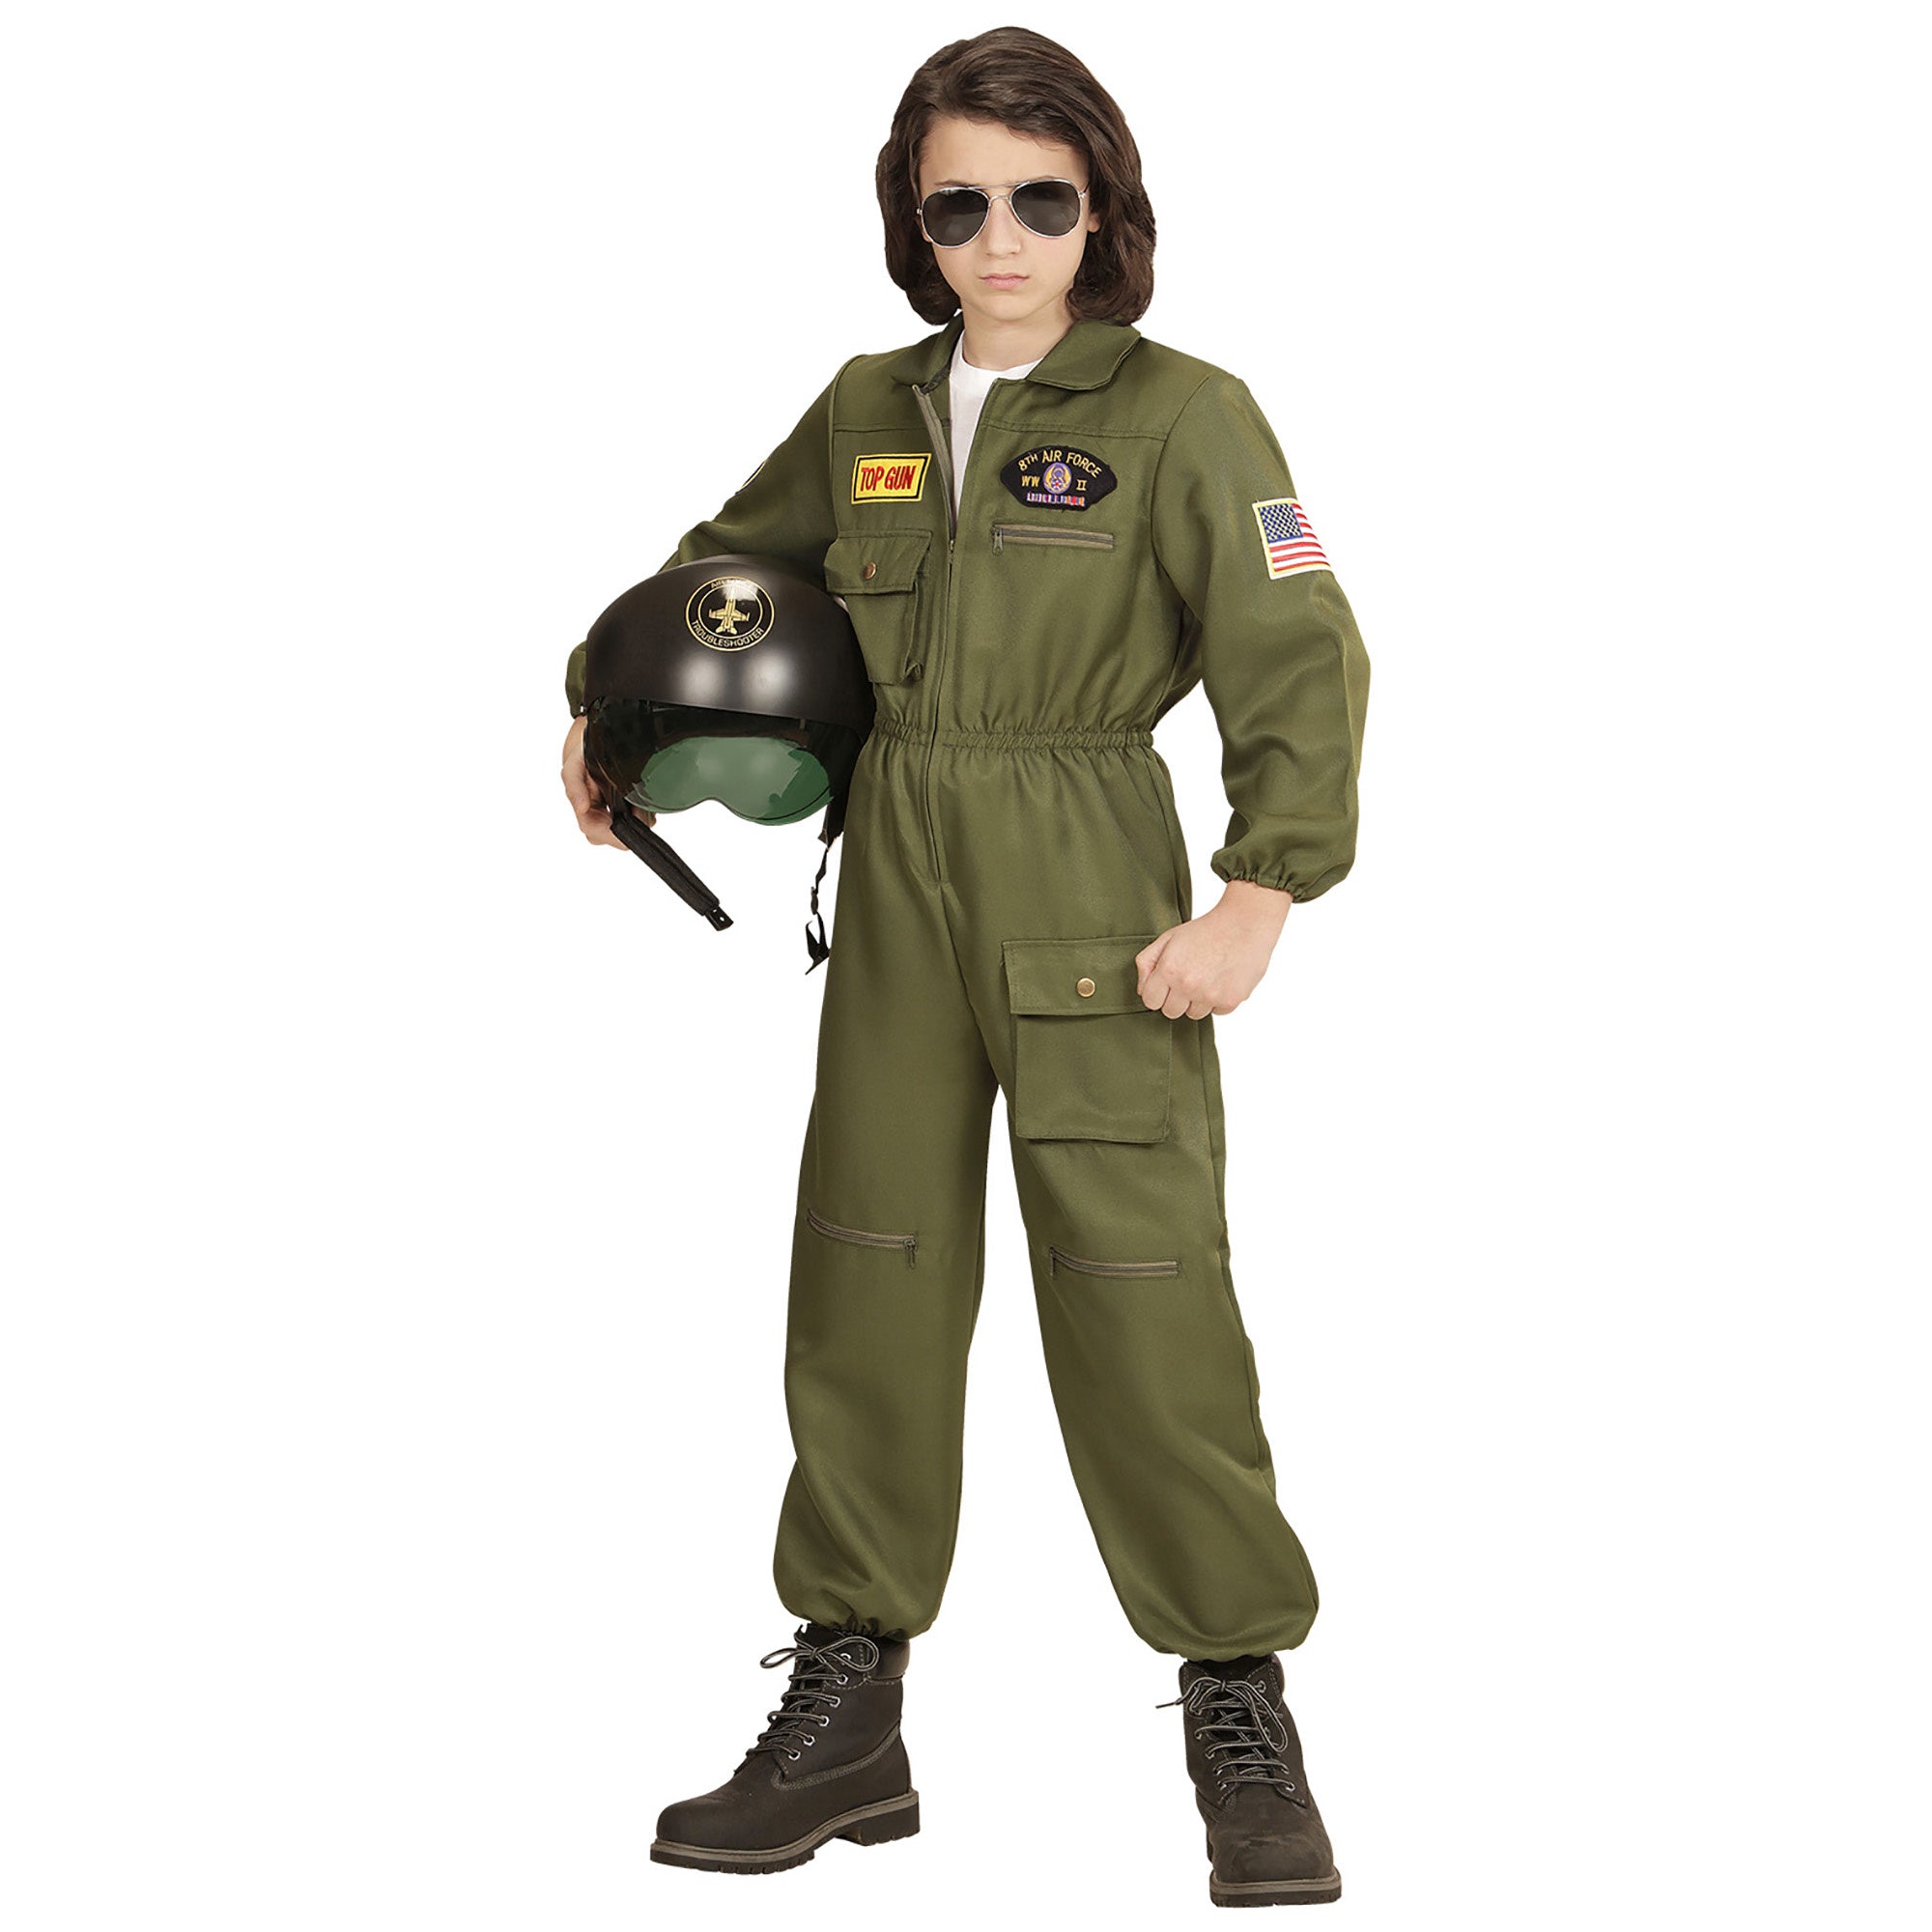 Widmann - Leger & Oorlog Kostuum - Gevechtspiloot Cruising Altitude - Jongen - groen - Maat 128 - Carnavalskleding - Verkleedkleding